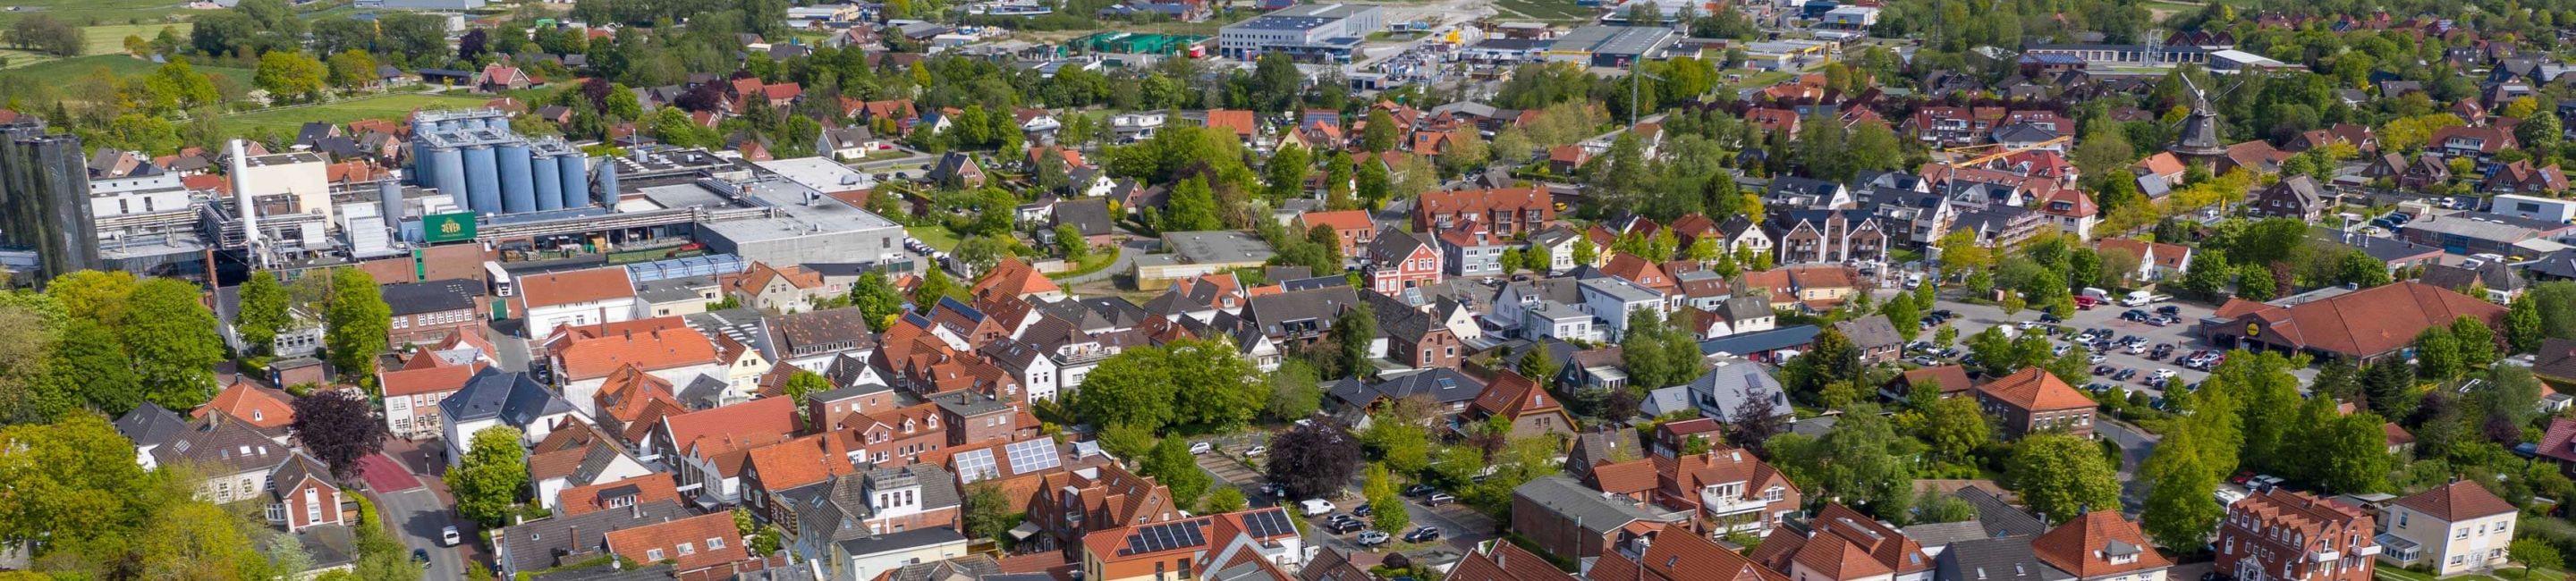 Foto aus der Höhe, man sieht den Alten Markt, das Gewerbegebiet im Hintergrund sowie Windkrafträder bis hin zur Nordsee